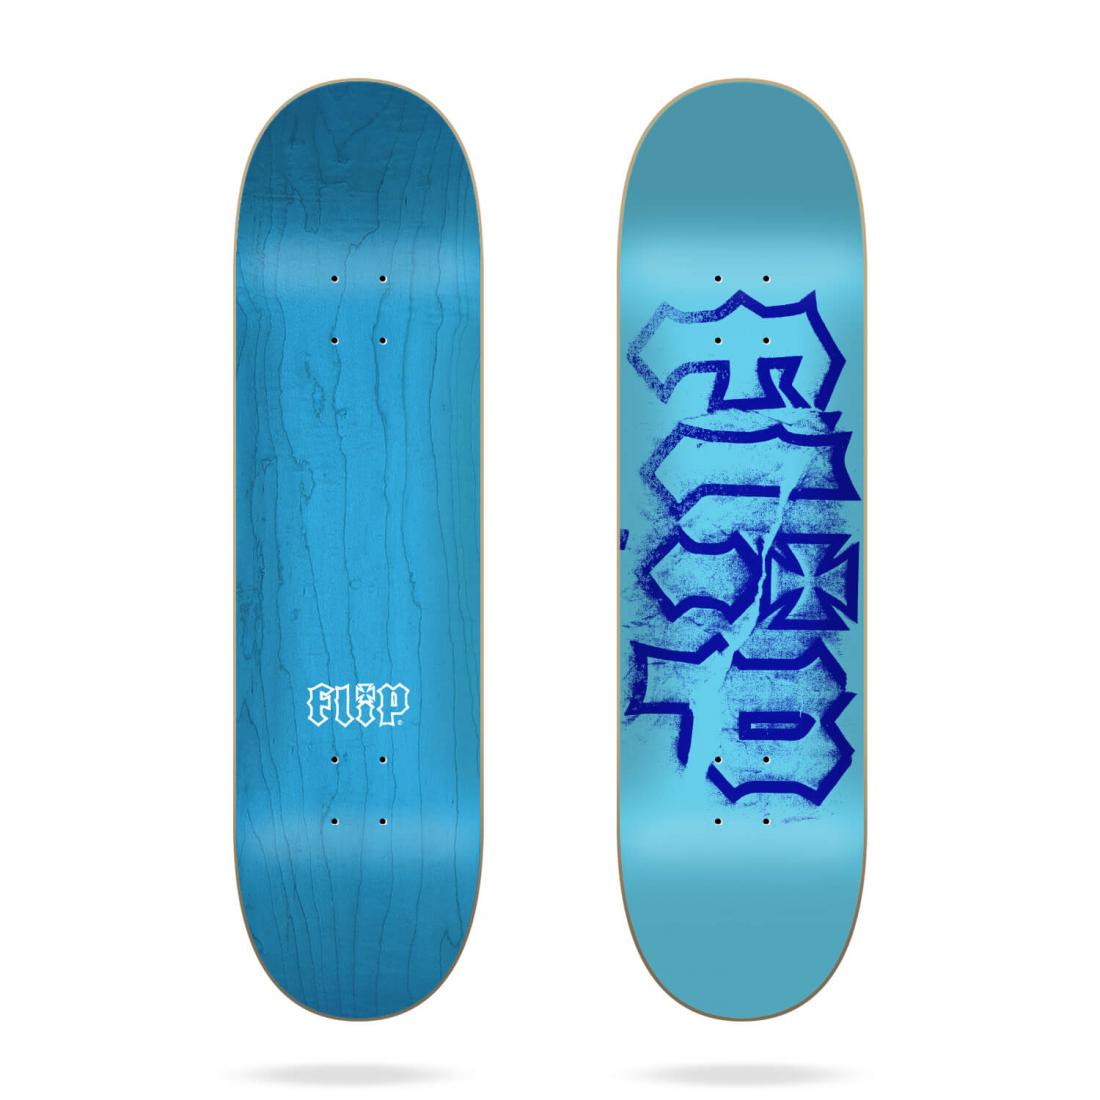 Дека скейтборд Flip Hkd Torn Deck Flip, цвет синий, размер 8.375